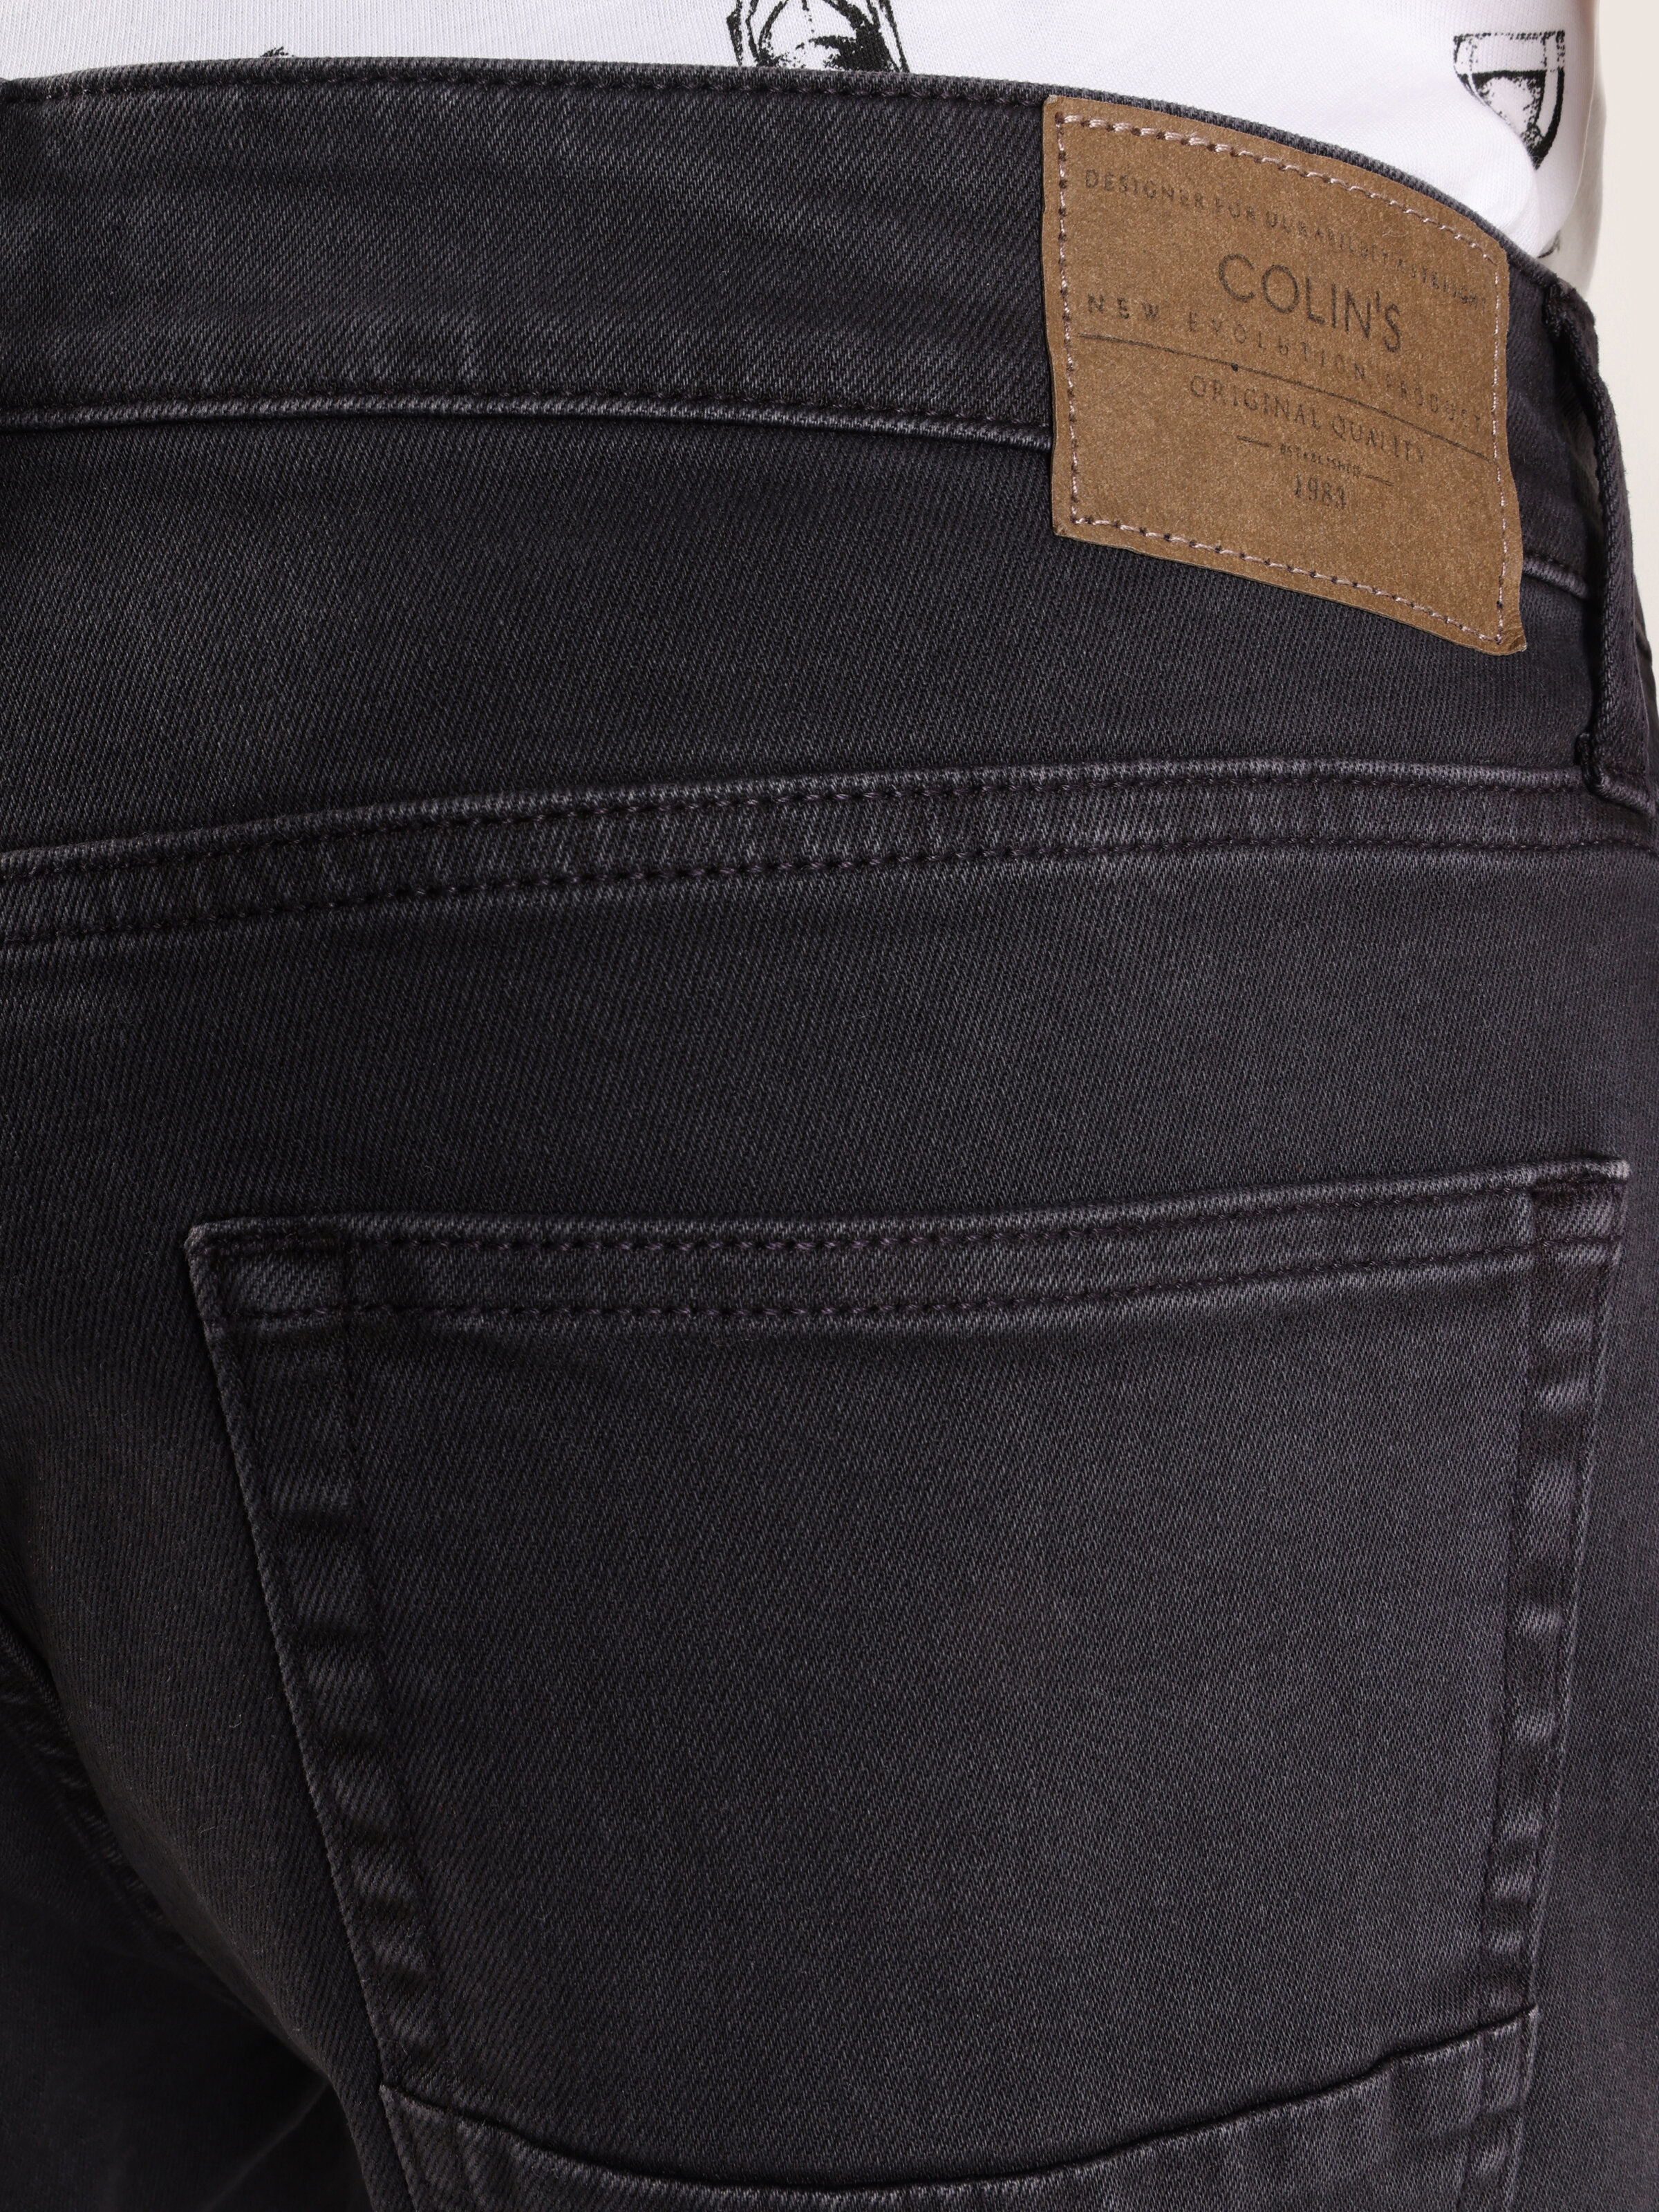 Afișați detalii pentru Short / Pantaloni Scurti De Barbati Antracit Regular Fit 